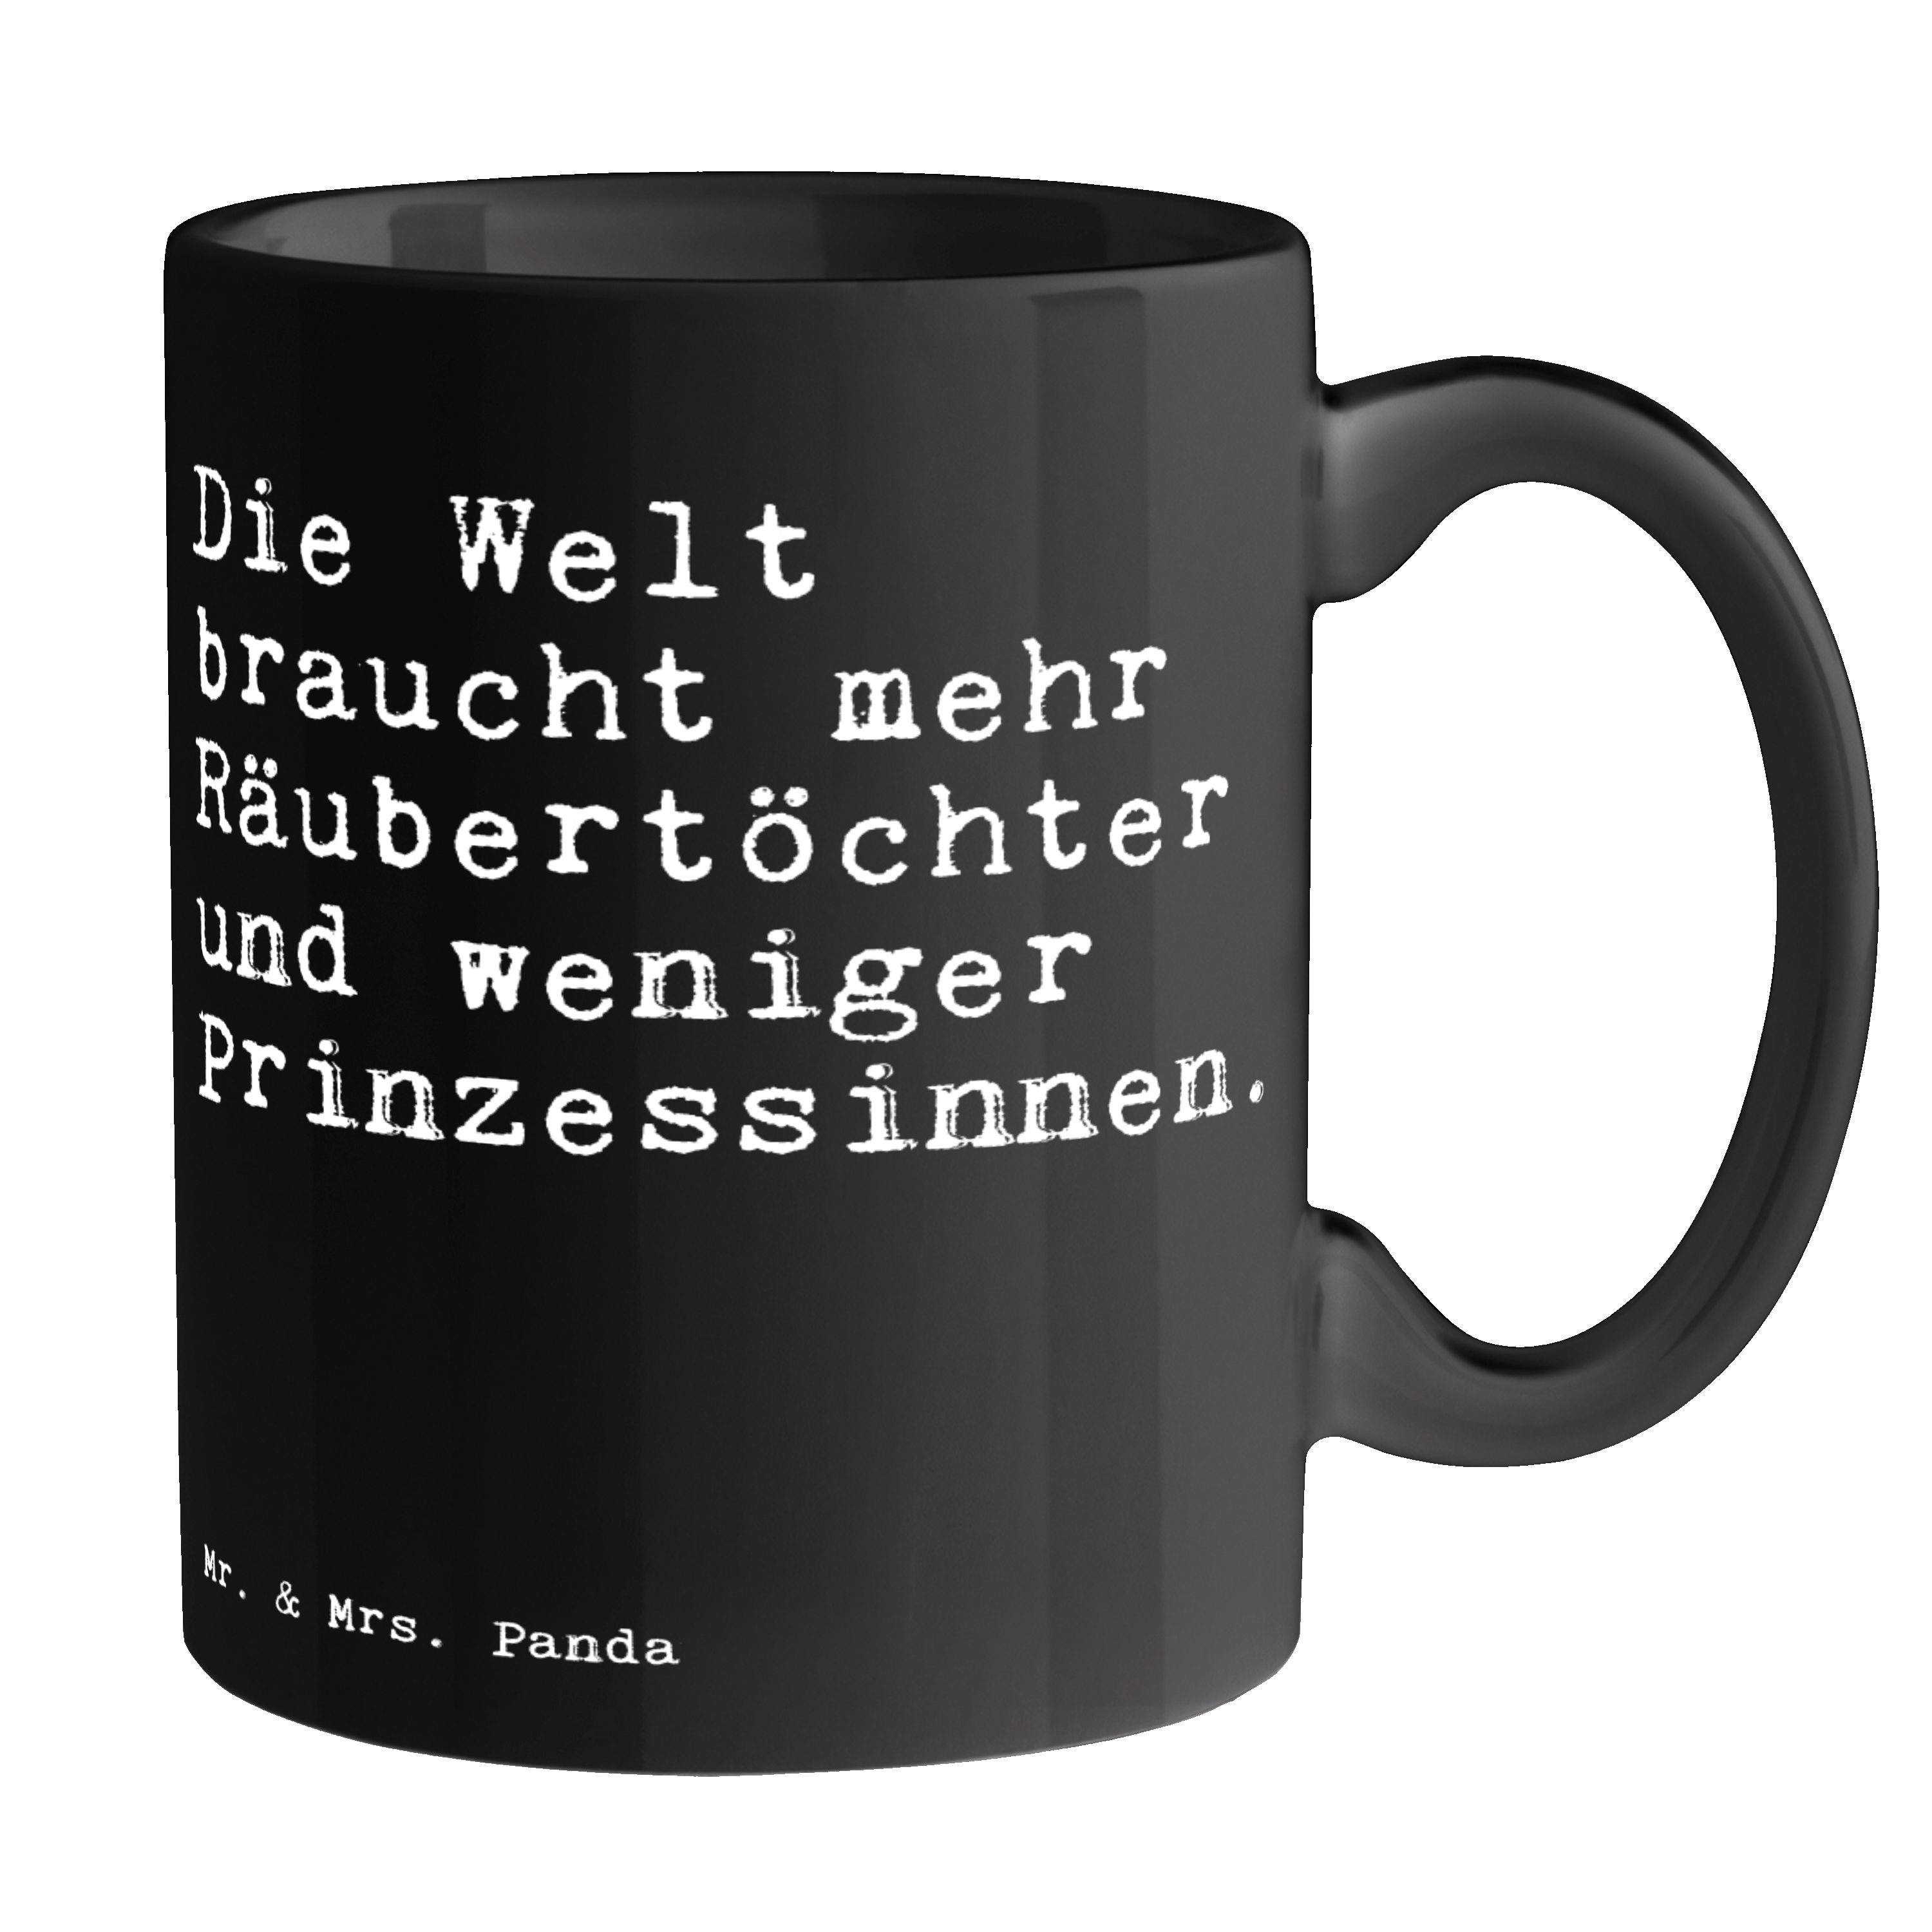 Mr. & Mrs. Panda Tasse Die Welt braucht mehr... - Schwarz - Geschenk, Prinz, Weisheiten, Räu, Keramik Schwarz